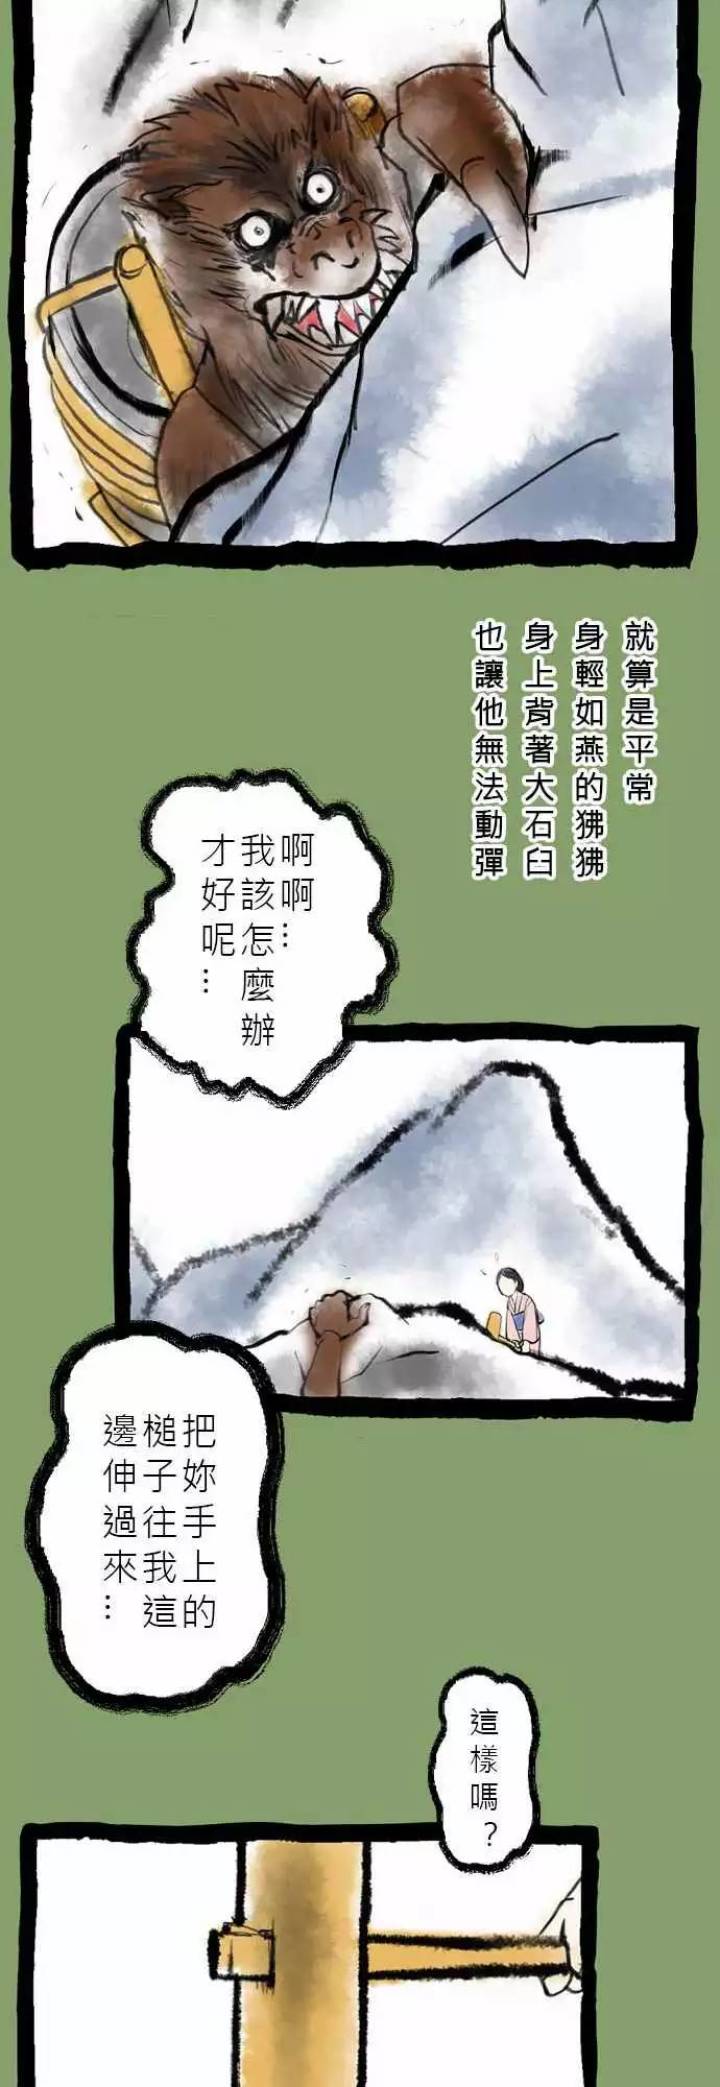 田中宏明奇怪怪奇系列《咚咚咚》-黑白漫话